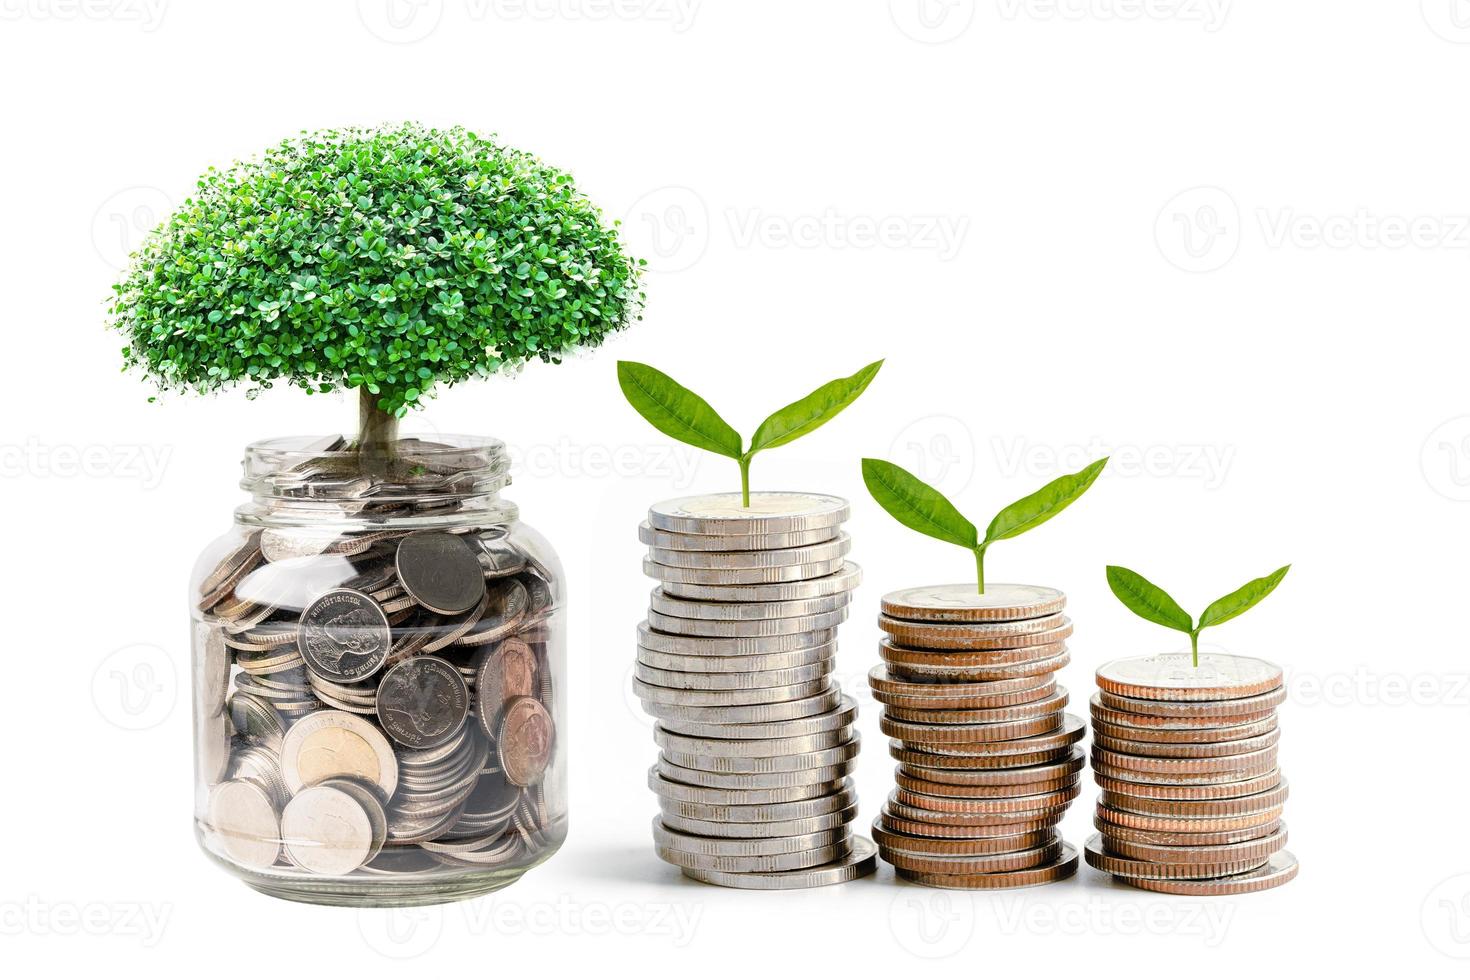 Baum-Plumule-Blatt auf Geldmünzen sparen, Geschäftsfinanzierung spart Bankinvestitionskonzept. foto